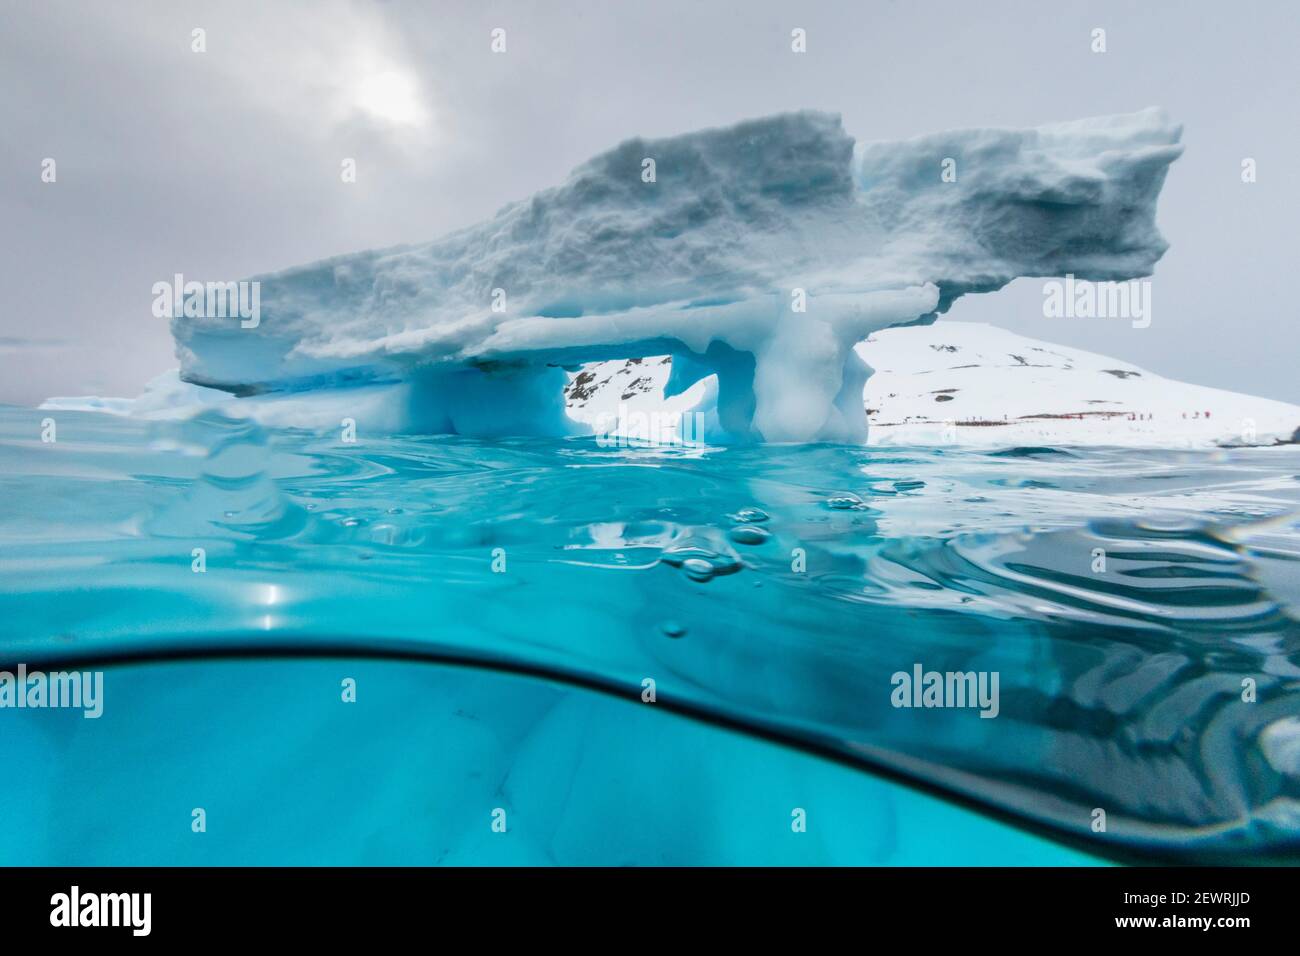 Vue au-dessus et en dessous d'une arche formée dans un iceberg à l'île de Cuverville, le chenal Ererra, l'Antarctique, les régions polaires Banque D'Images